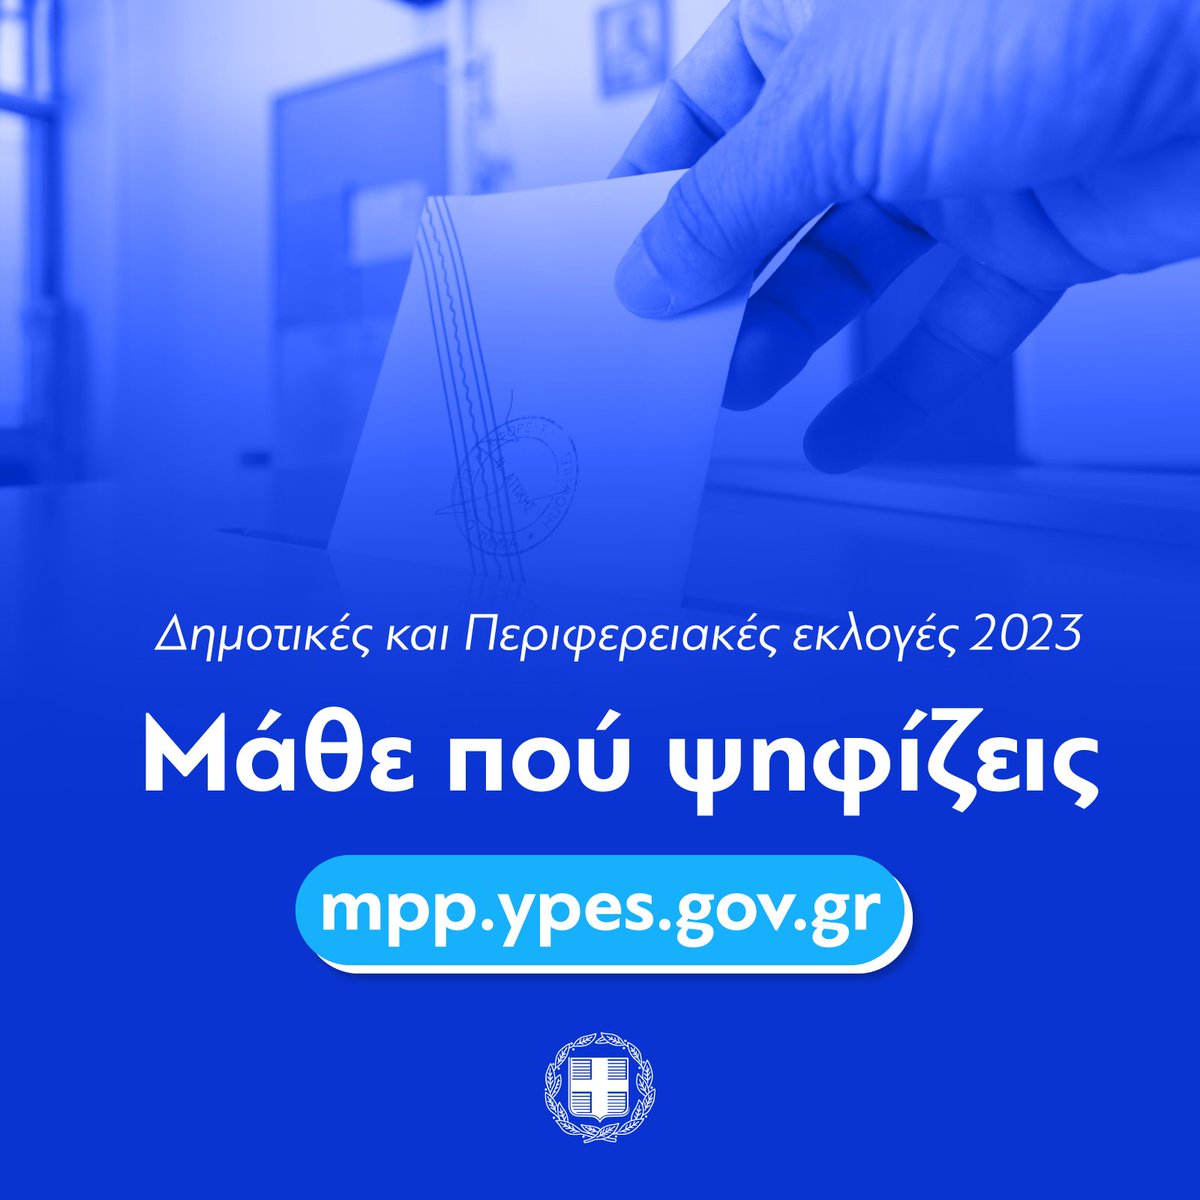 Αυτήν την Κυριακή ψηφίζουμε! Μπορείτε να βρείτε το εκλογικό τμήμα που ψηφίζετε στις Δημοτικές και Περιφερειακές εκλογές της 8ης Οκτωβρίου στο mpp.ypes.gov.gr.